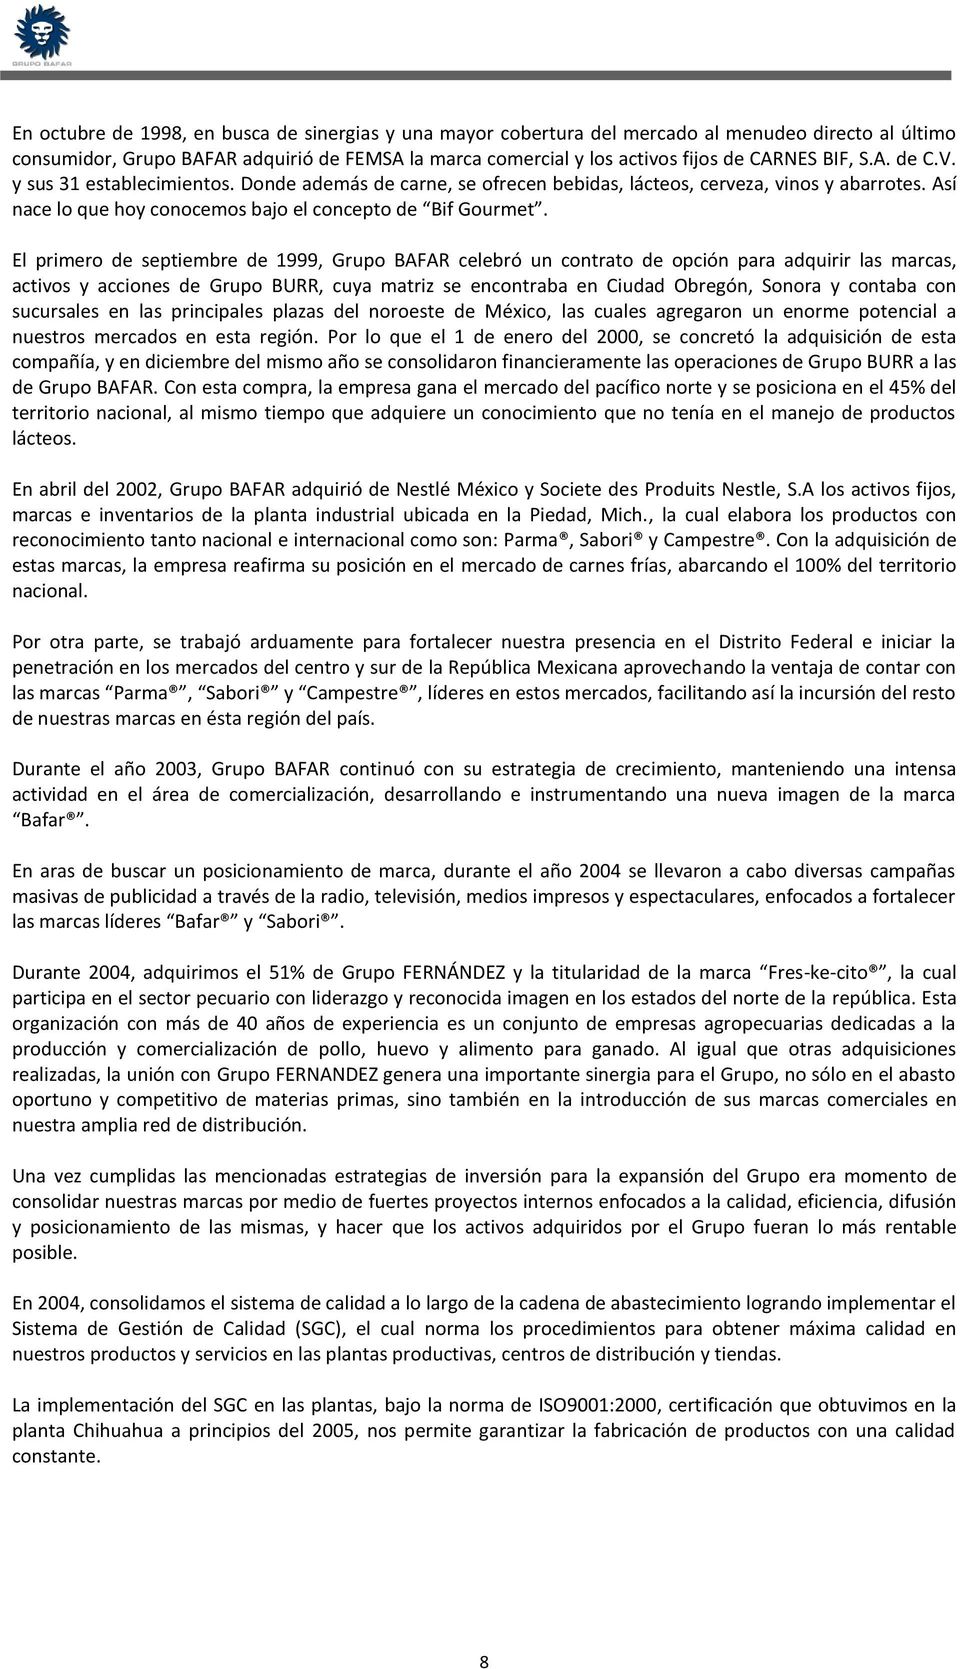 El primero de septiembre de 1999, Grupo BAFAR celebró un contrato de opción para adquirir las marcas, activos y acciones de Grupo BURR, cuya matriz se encontraba en Ciudad Obregón, Sonora y contaba